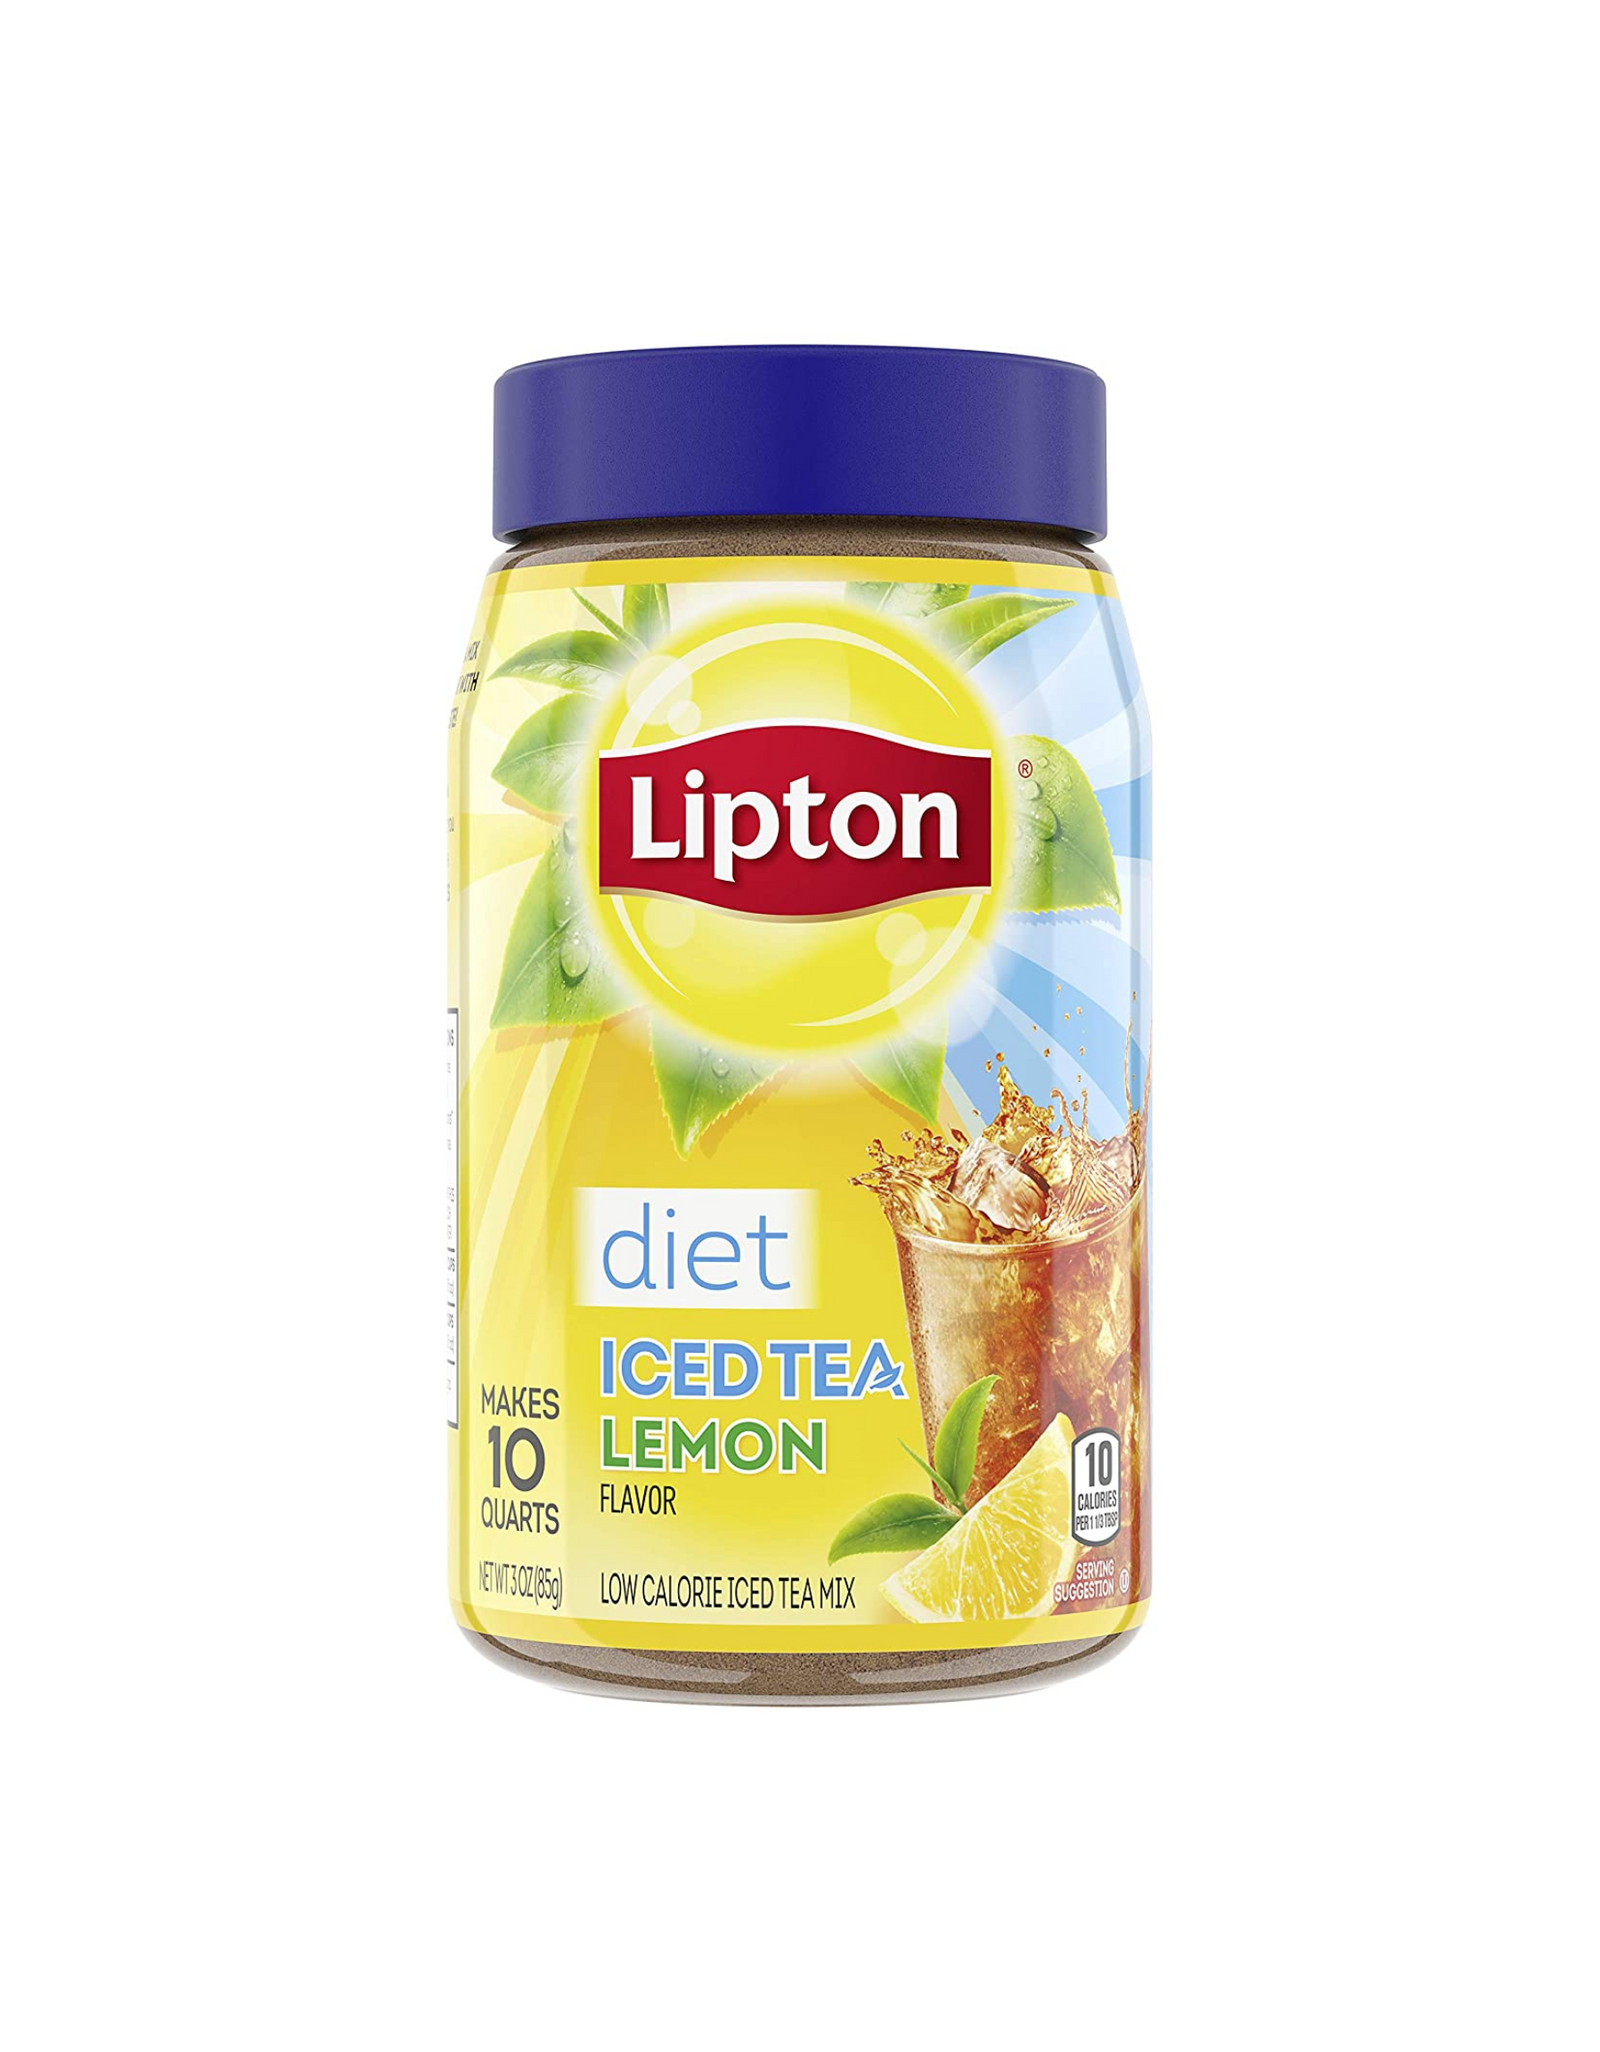 Lipton Diet Iced Tea Mix, Iced Tea Lemon, Makes 10 Quarts (Pack of 12)